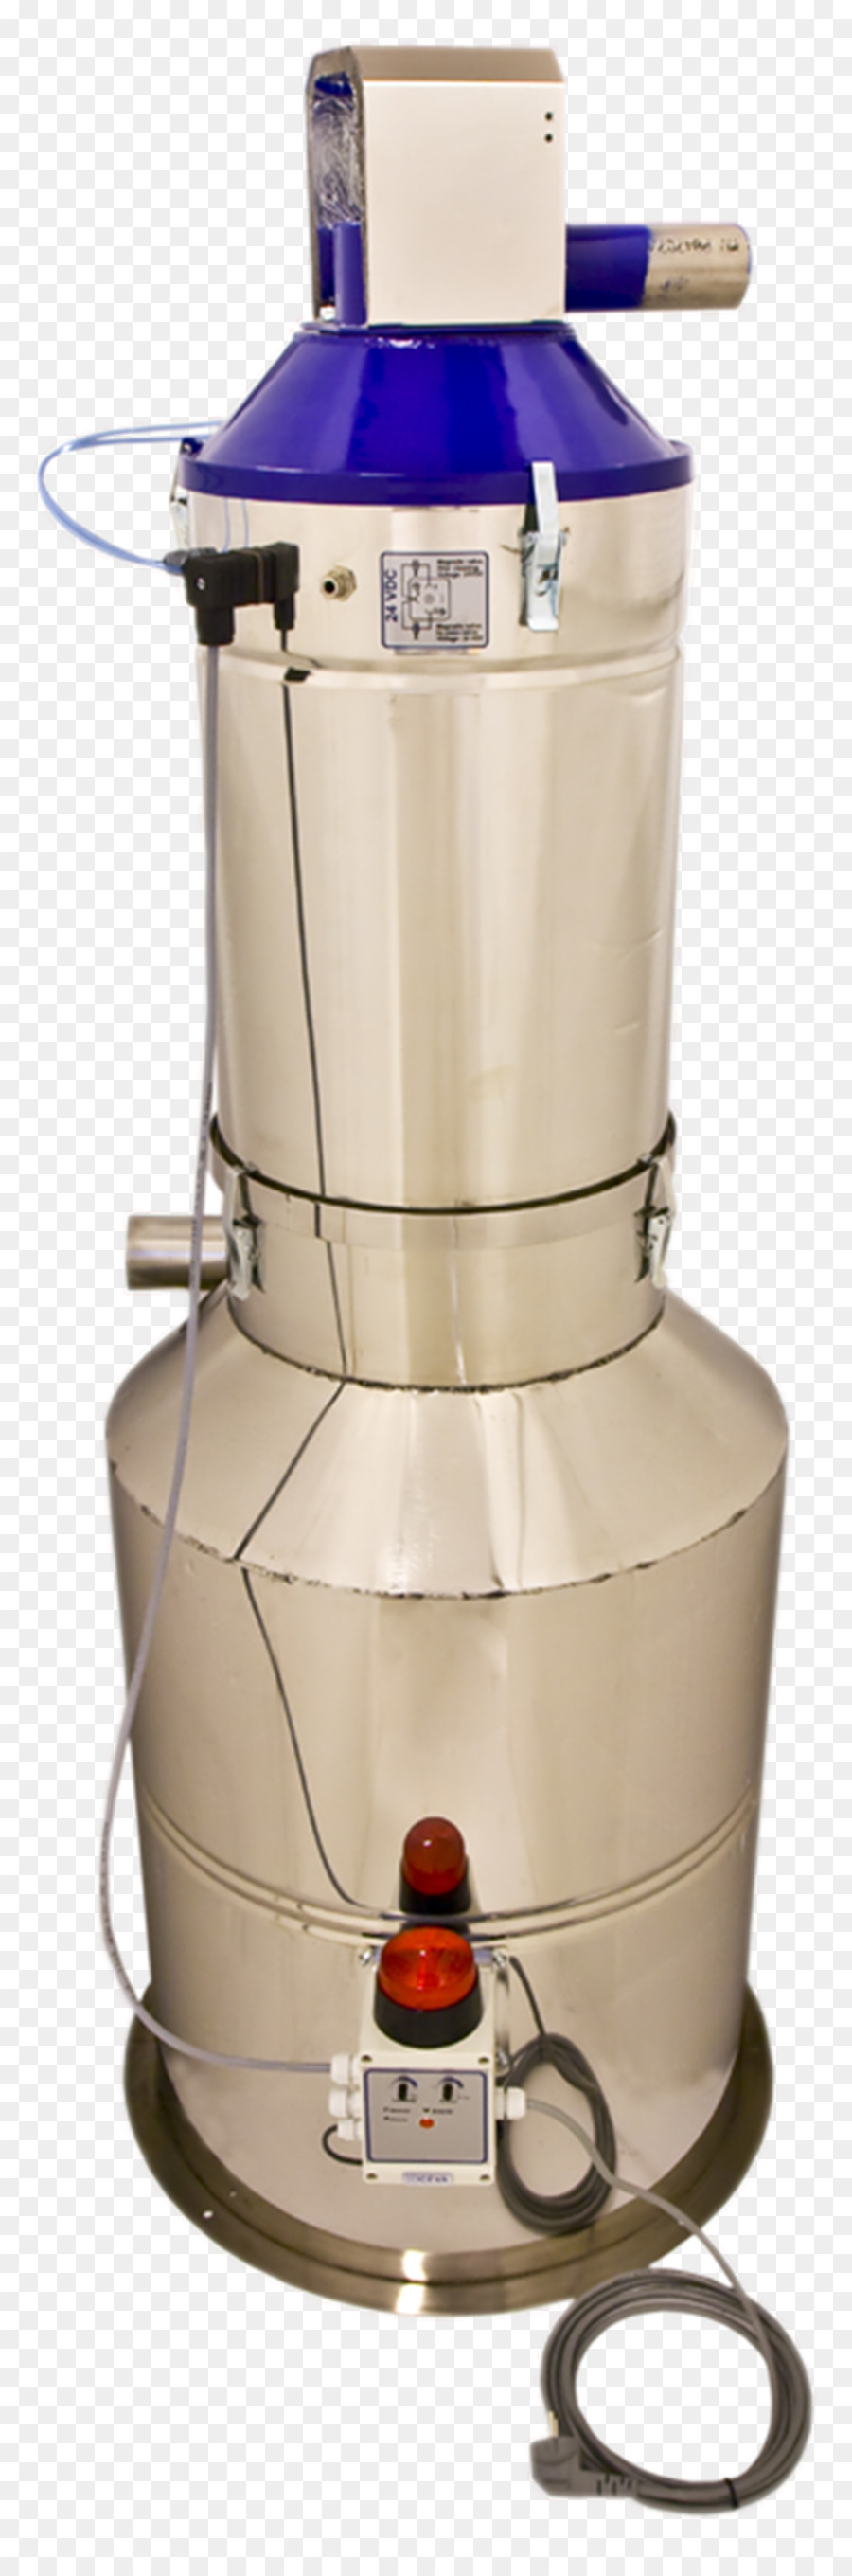 Kubikmeter Liter Wasserkocher Kilogramm Industrial design - andere